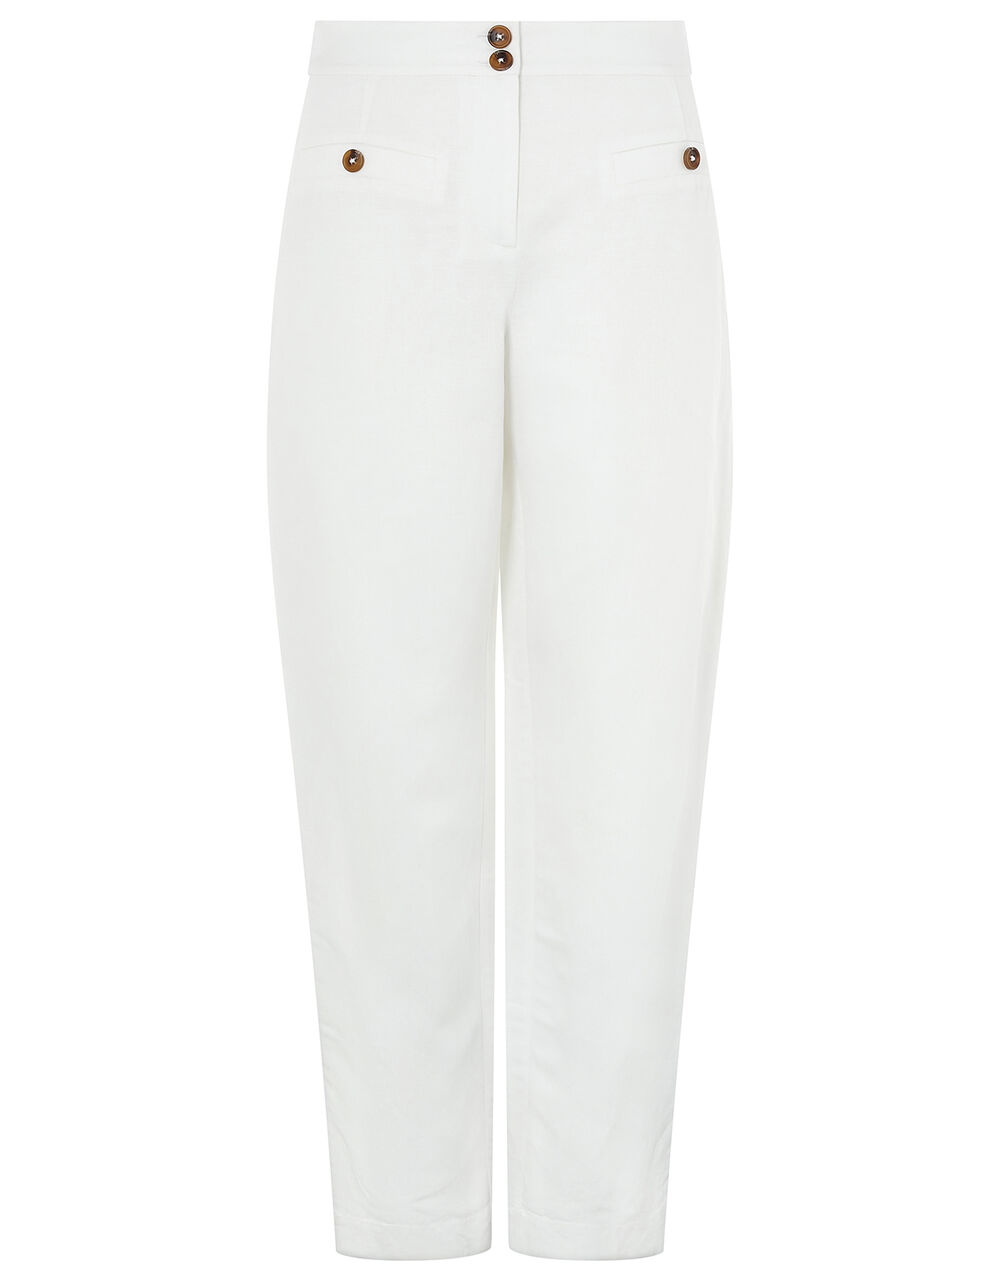 Charlotte Regular-Length Trousers in Linen Blend White | Trousers ...